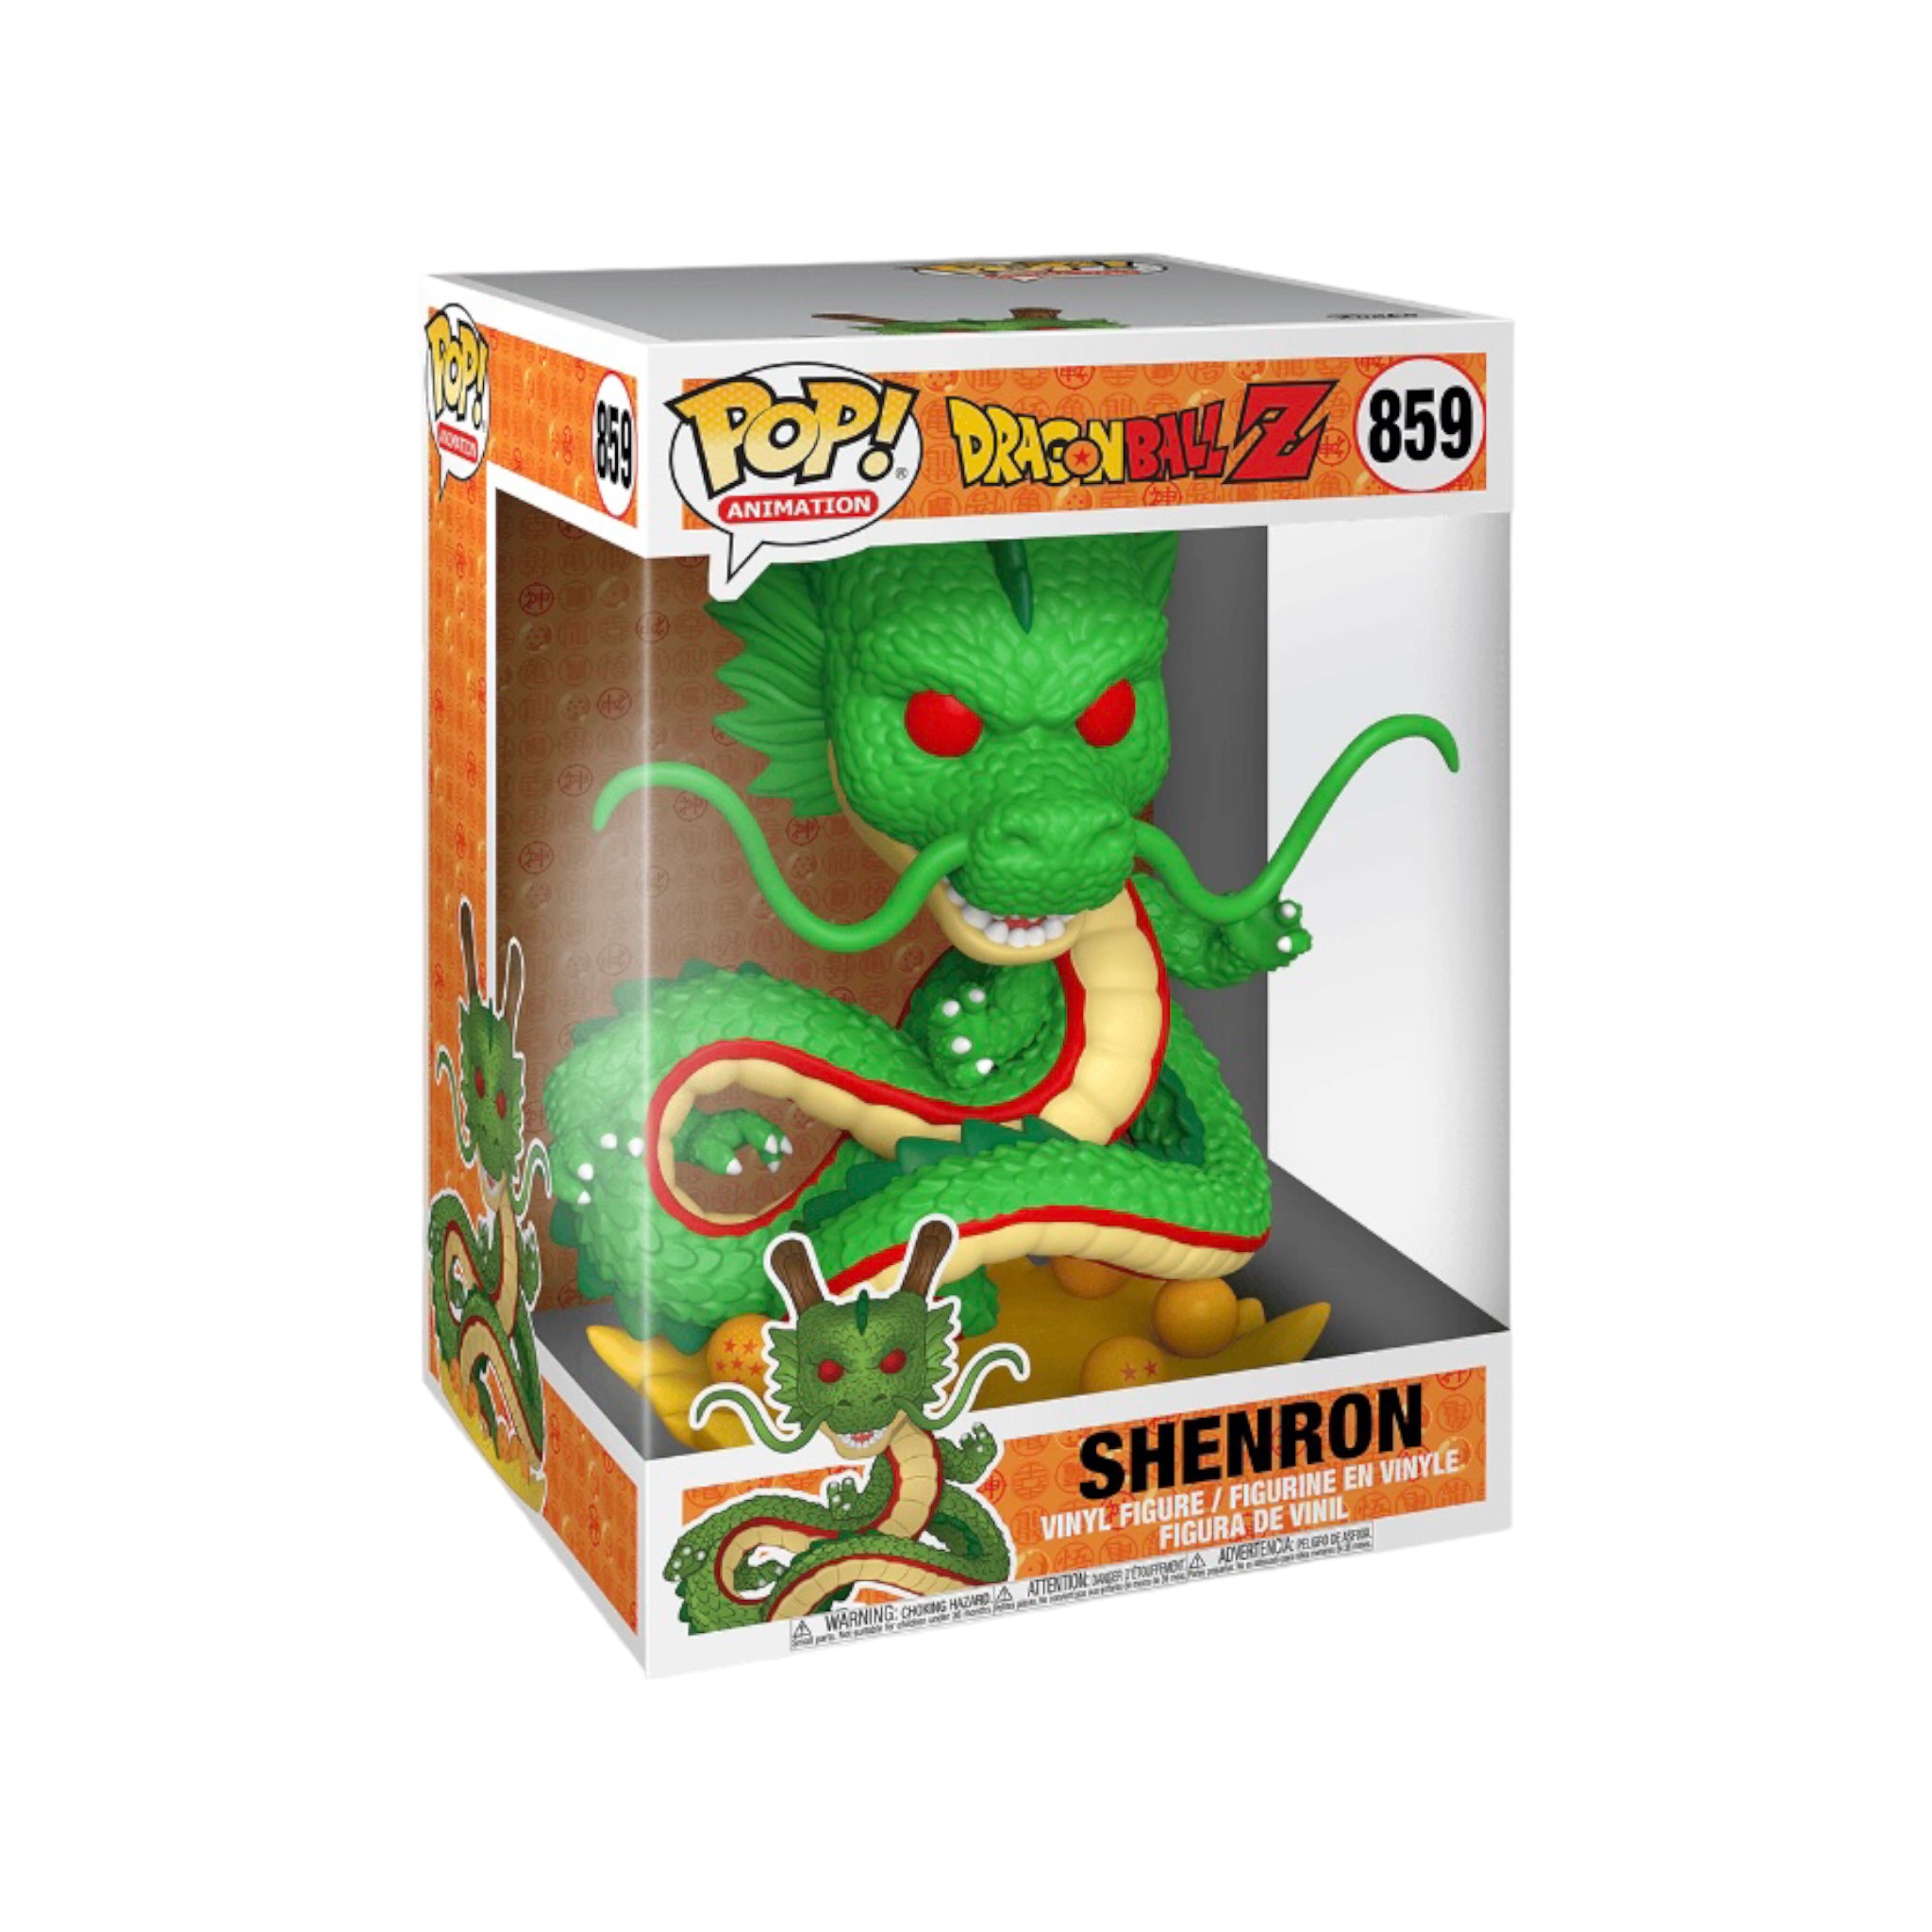 Shenron #859 10" Funko Pop! - Dragon Ball Z